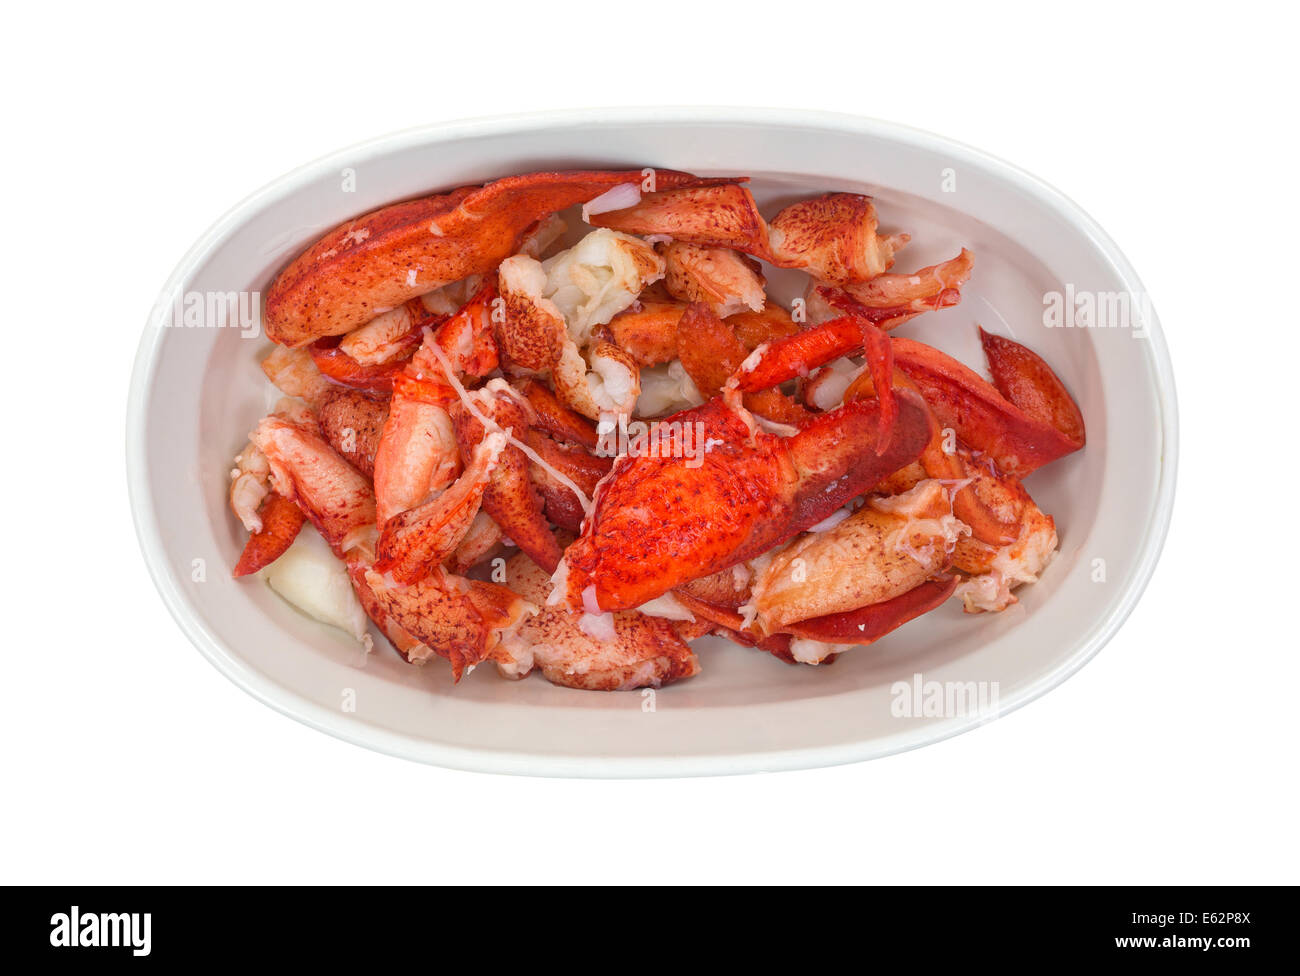 Vue de dessus du homard cuit dans un ovale allant au four sur un fond blanc. Banque D'Images